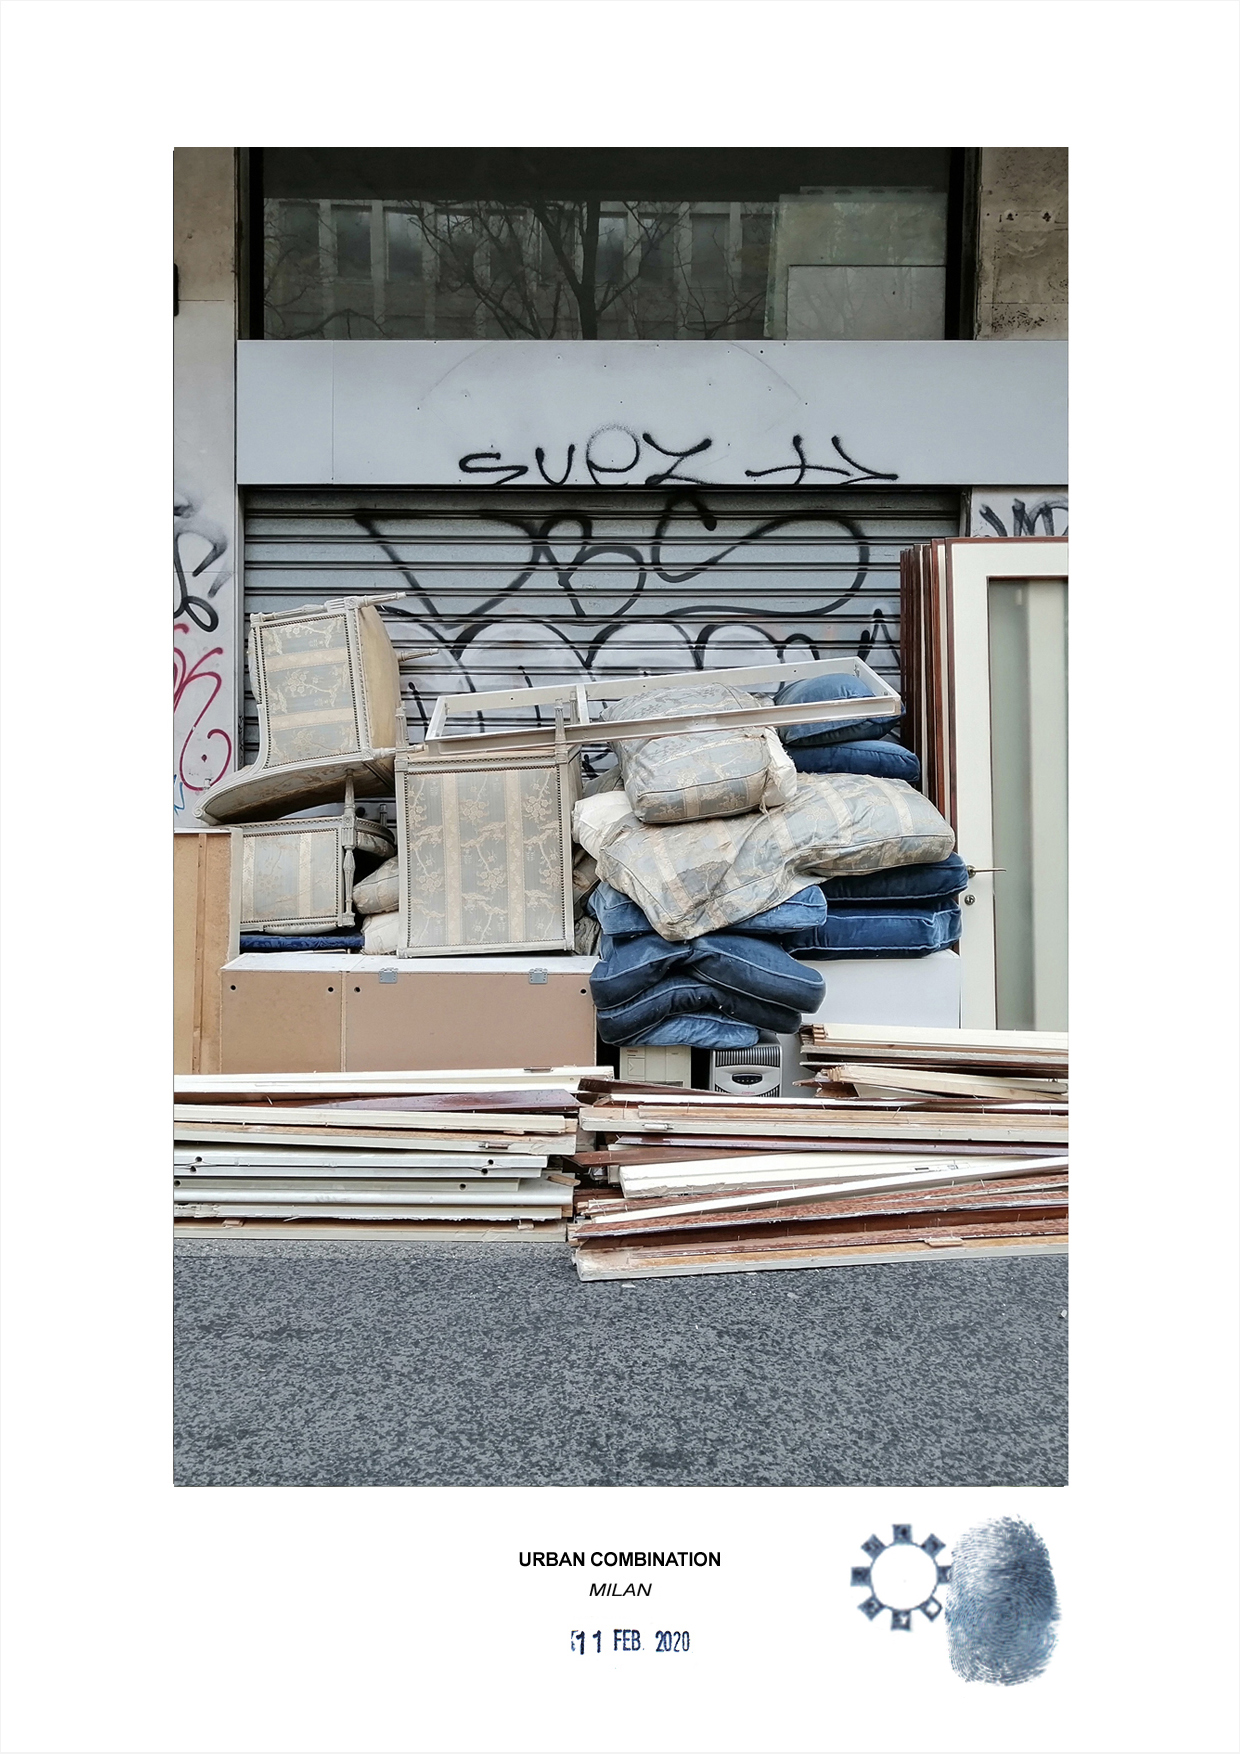 Combinazioni Urbana dell'artista contemporaneo Maurizio Di Feo. Installazione d'arte spontanea con mobili, sedie,cuscini e divani accatastati a Milano.